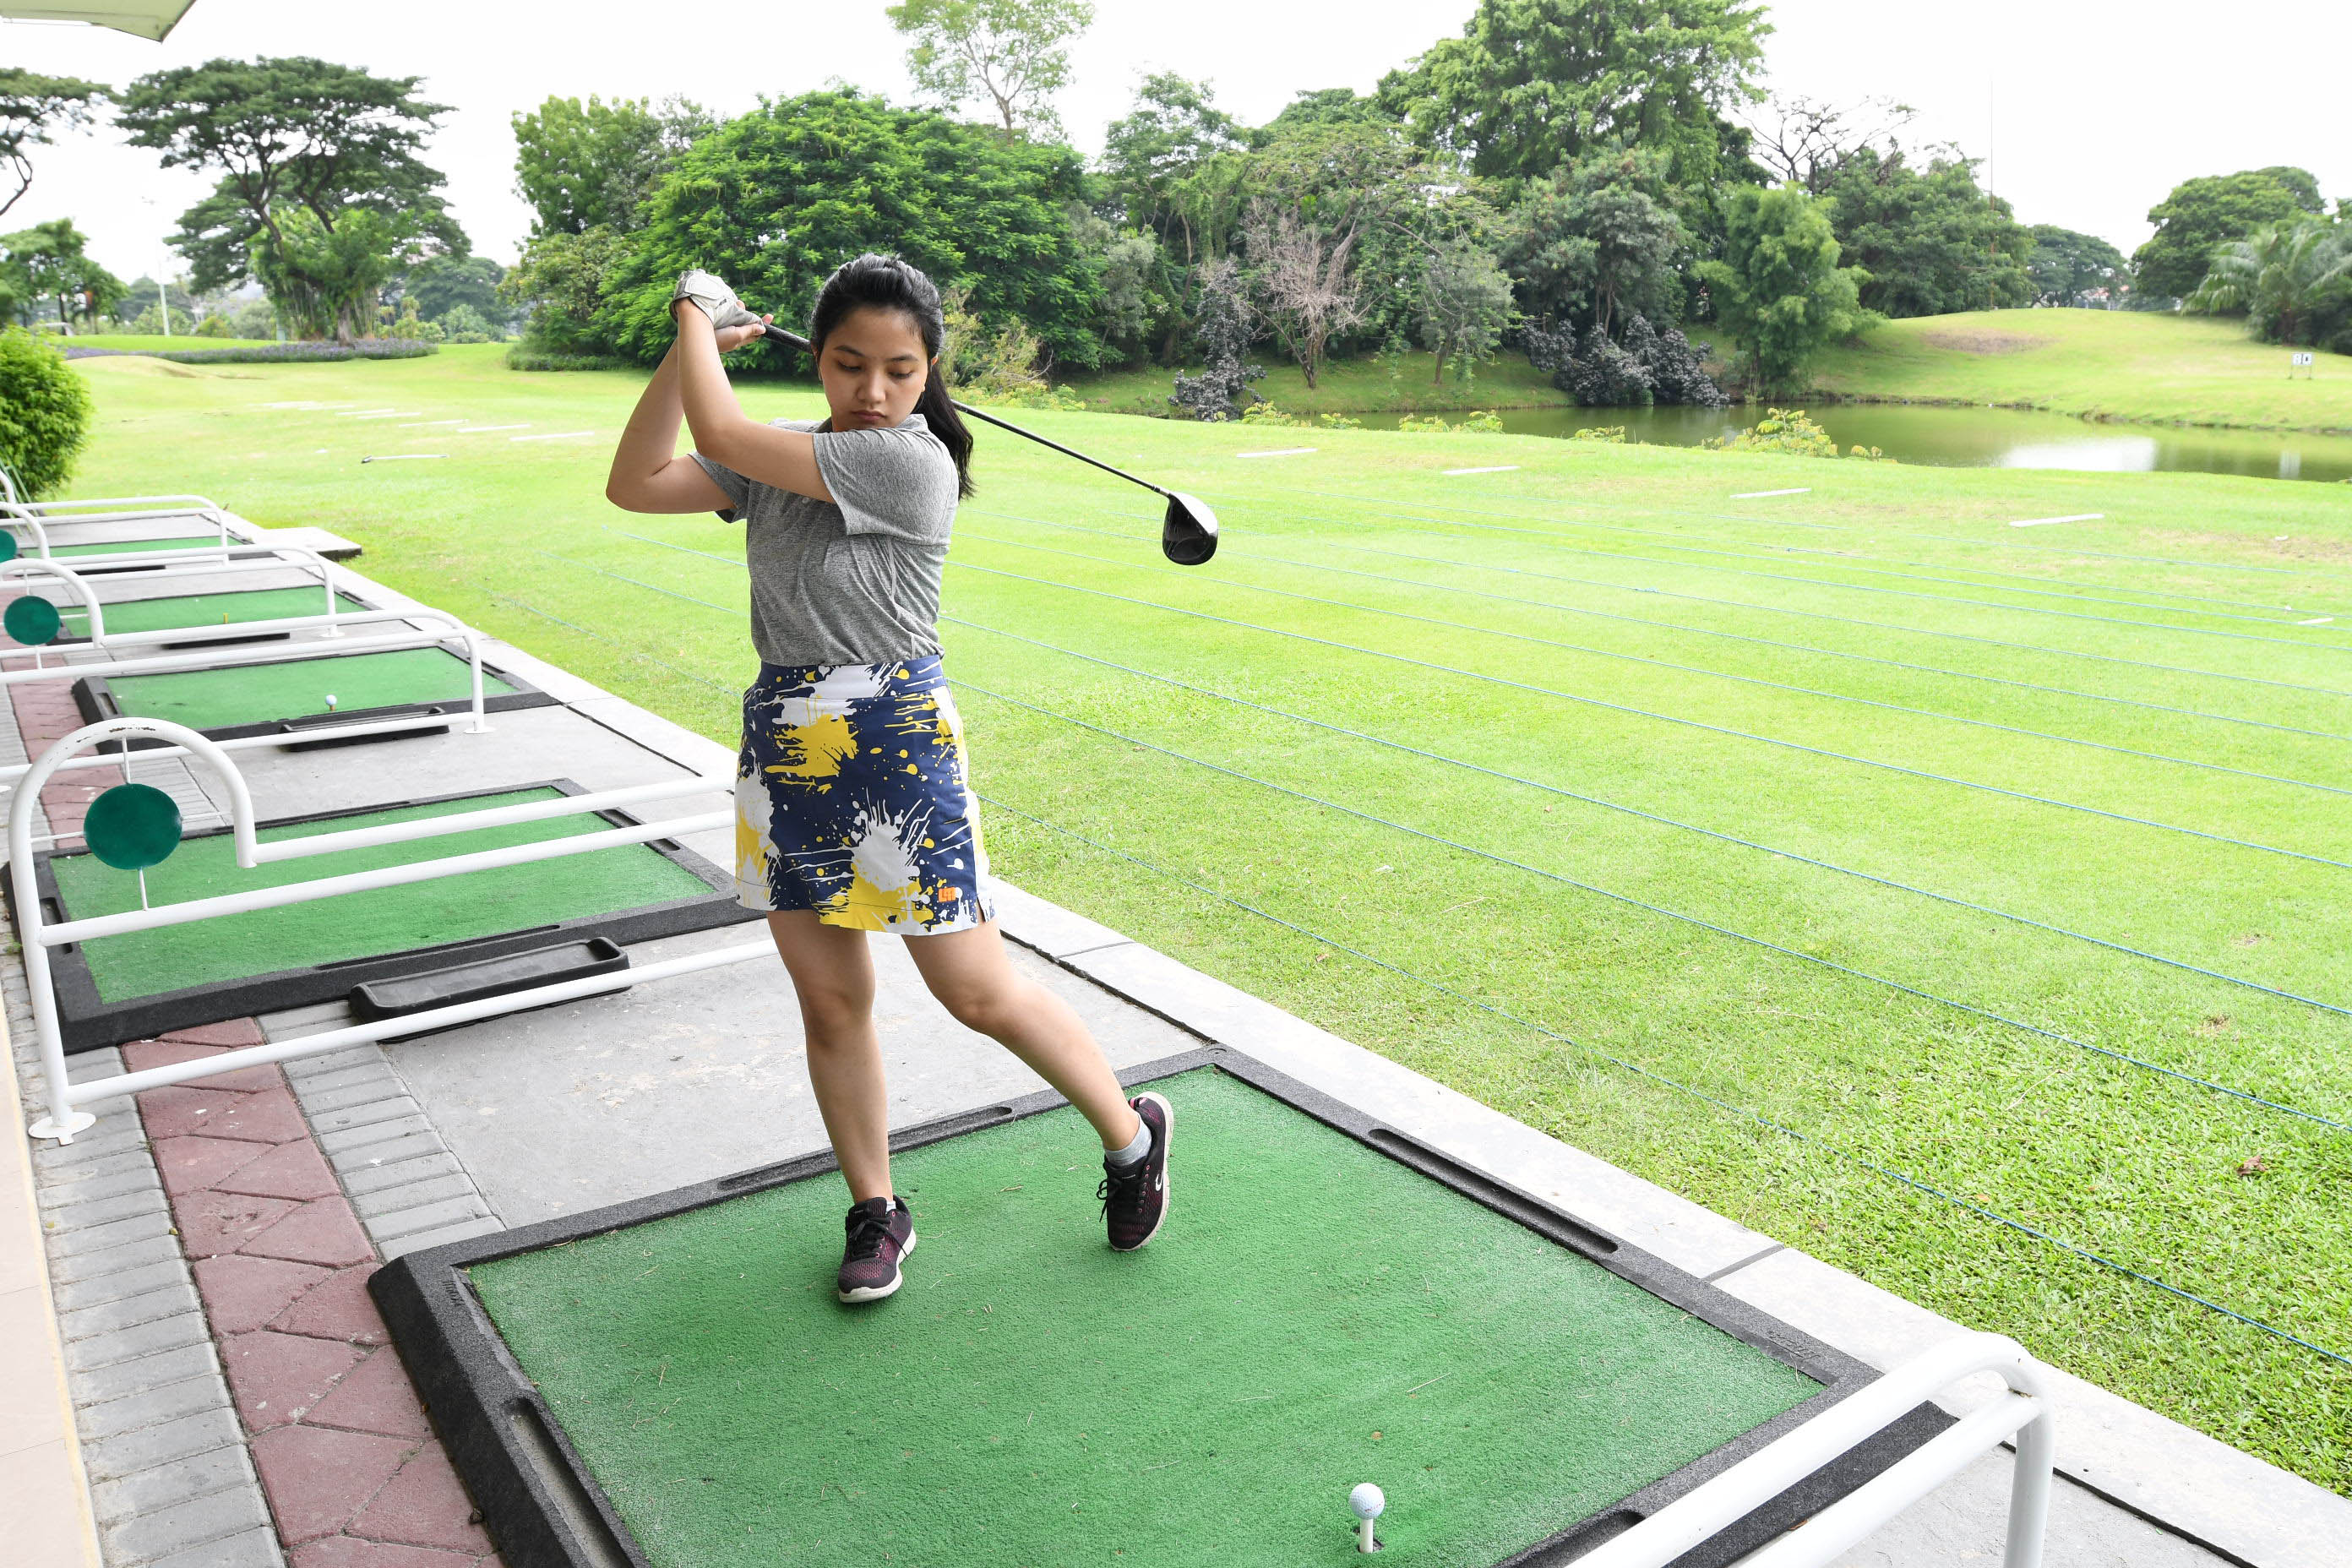 Salah satu golfer milenial yang sedang berlatih bermain golf di BDG Surabaya. (Foto: istimewa)